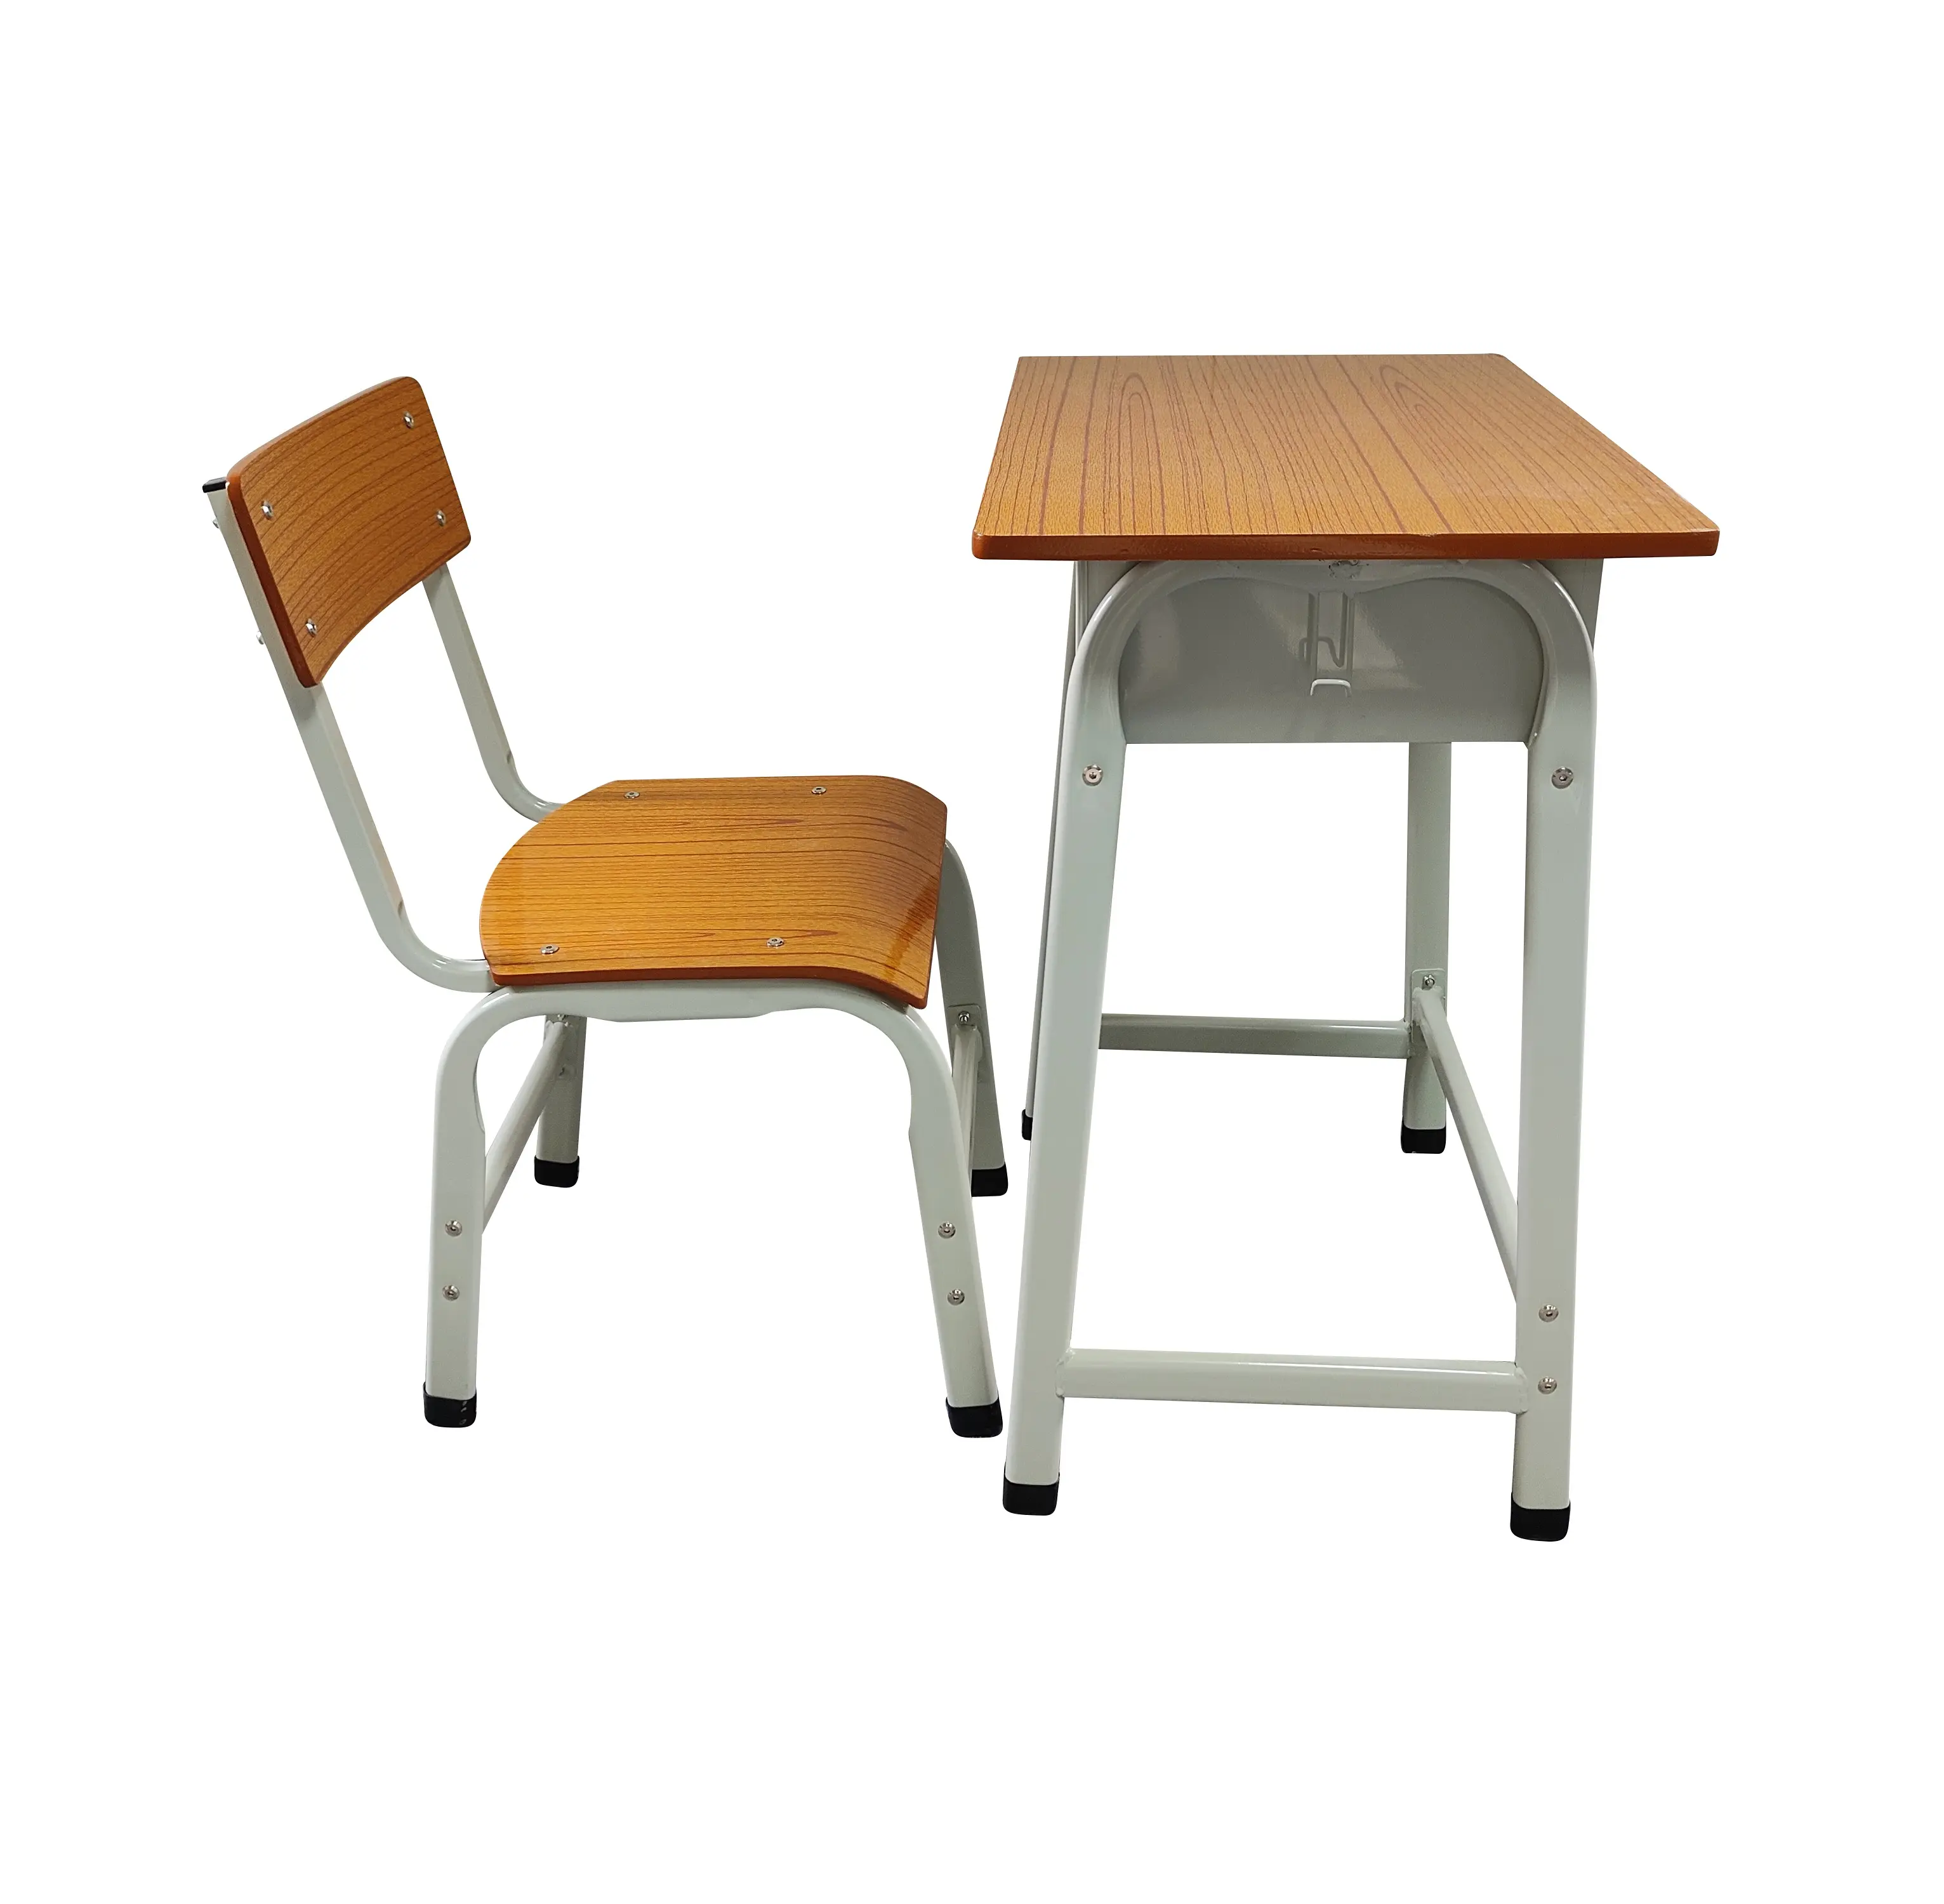 Дешевые металлические студенческие столы и стулья минималистичный дизайн школьной мебели для домашнего офиса спальни и гостиной для студентов